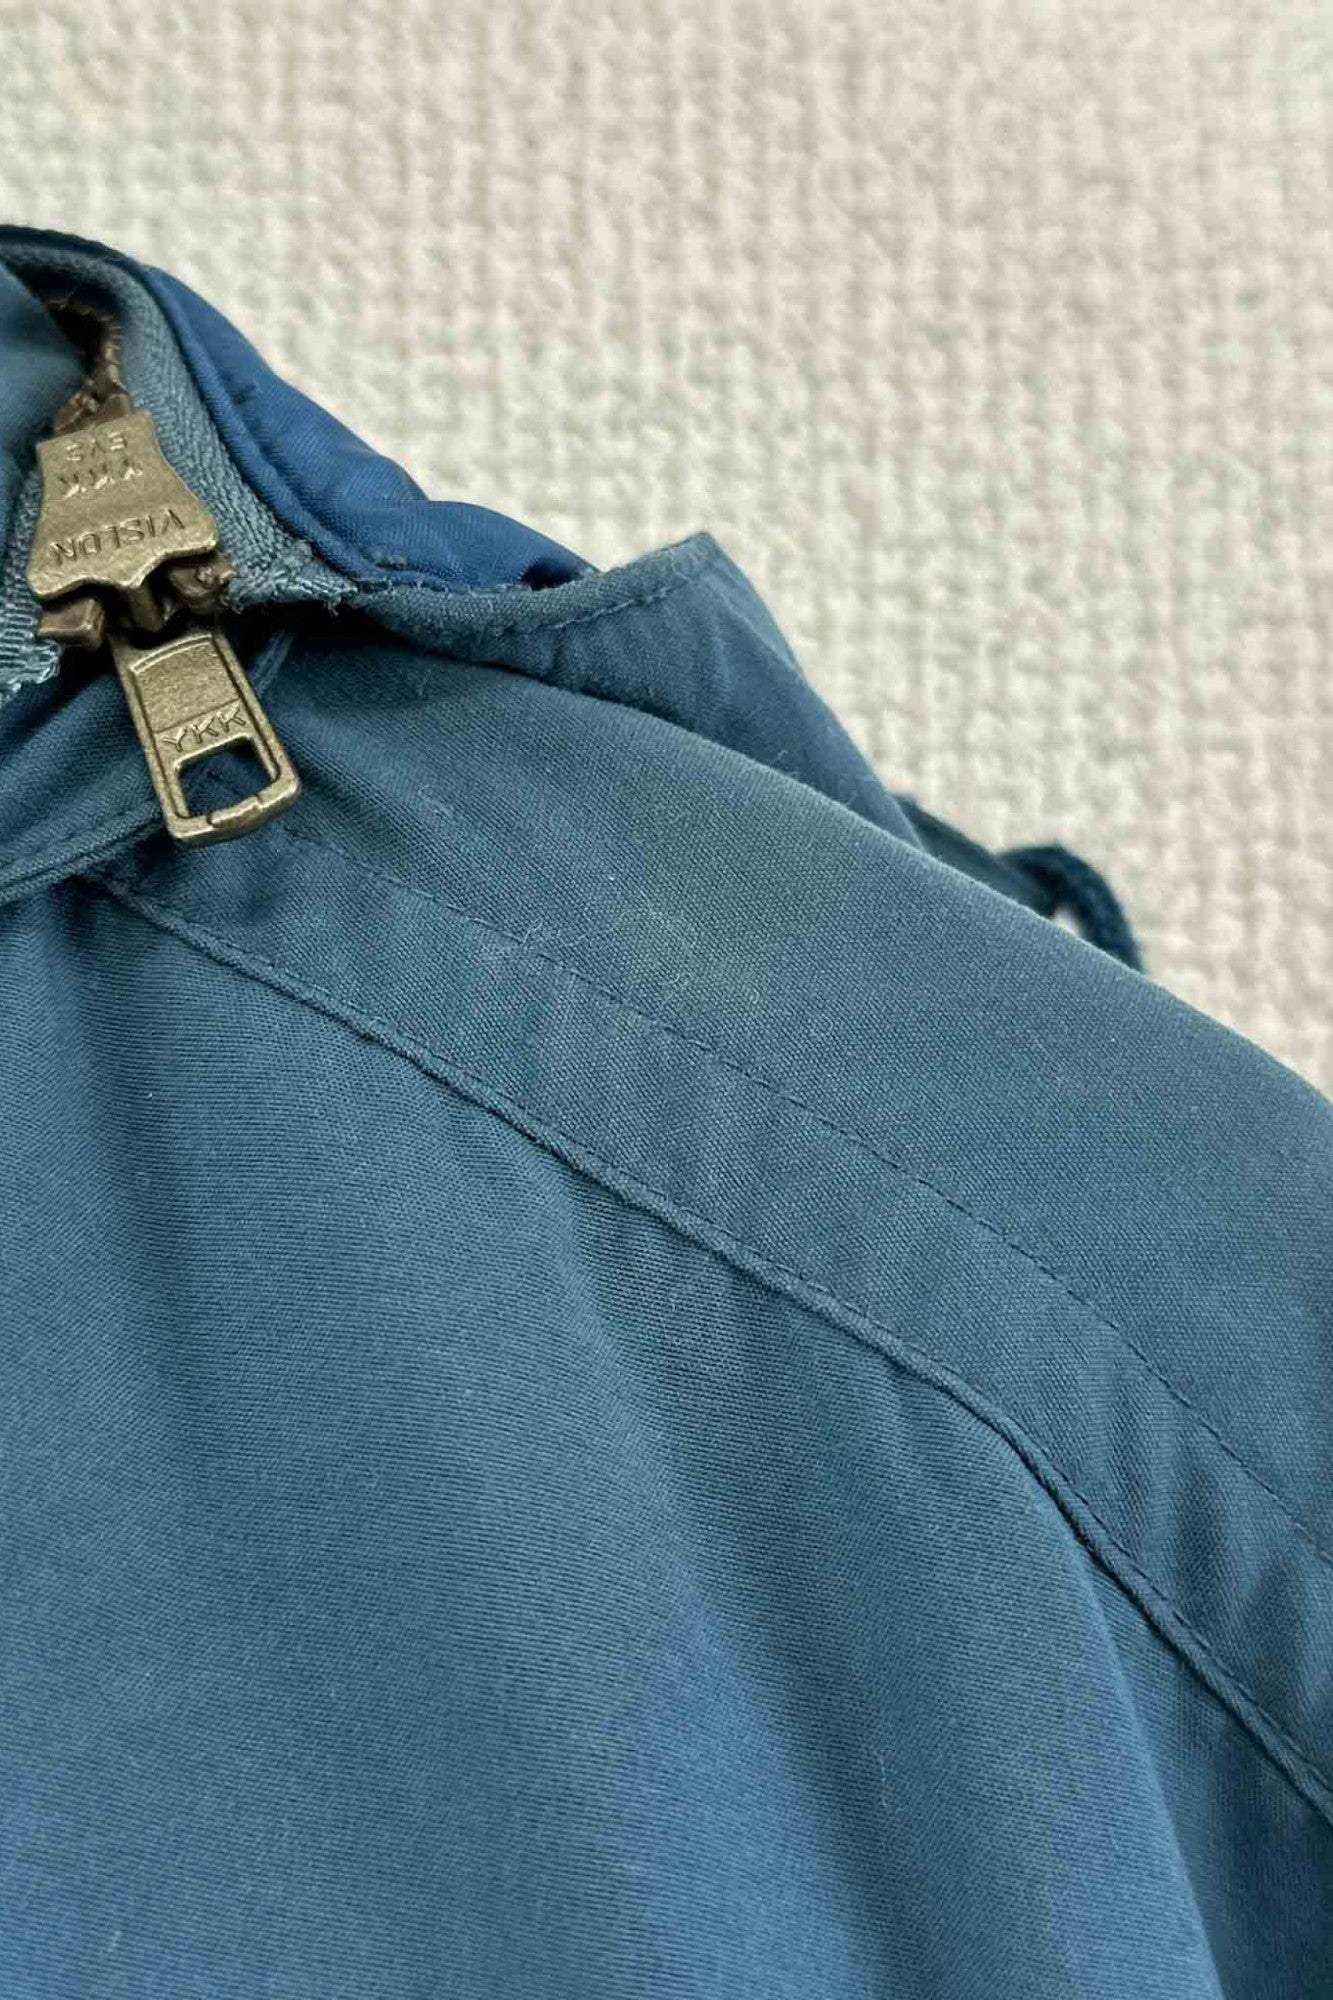 70's 80's LLBean blue jacket